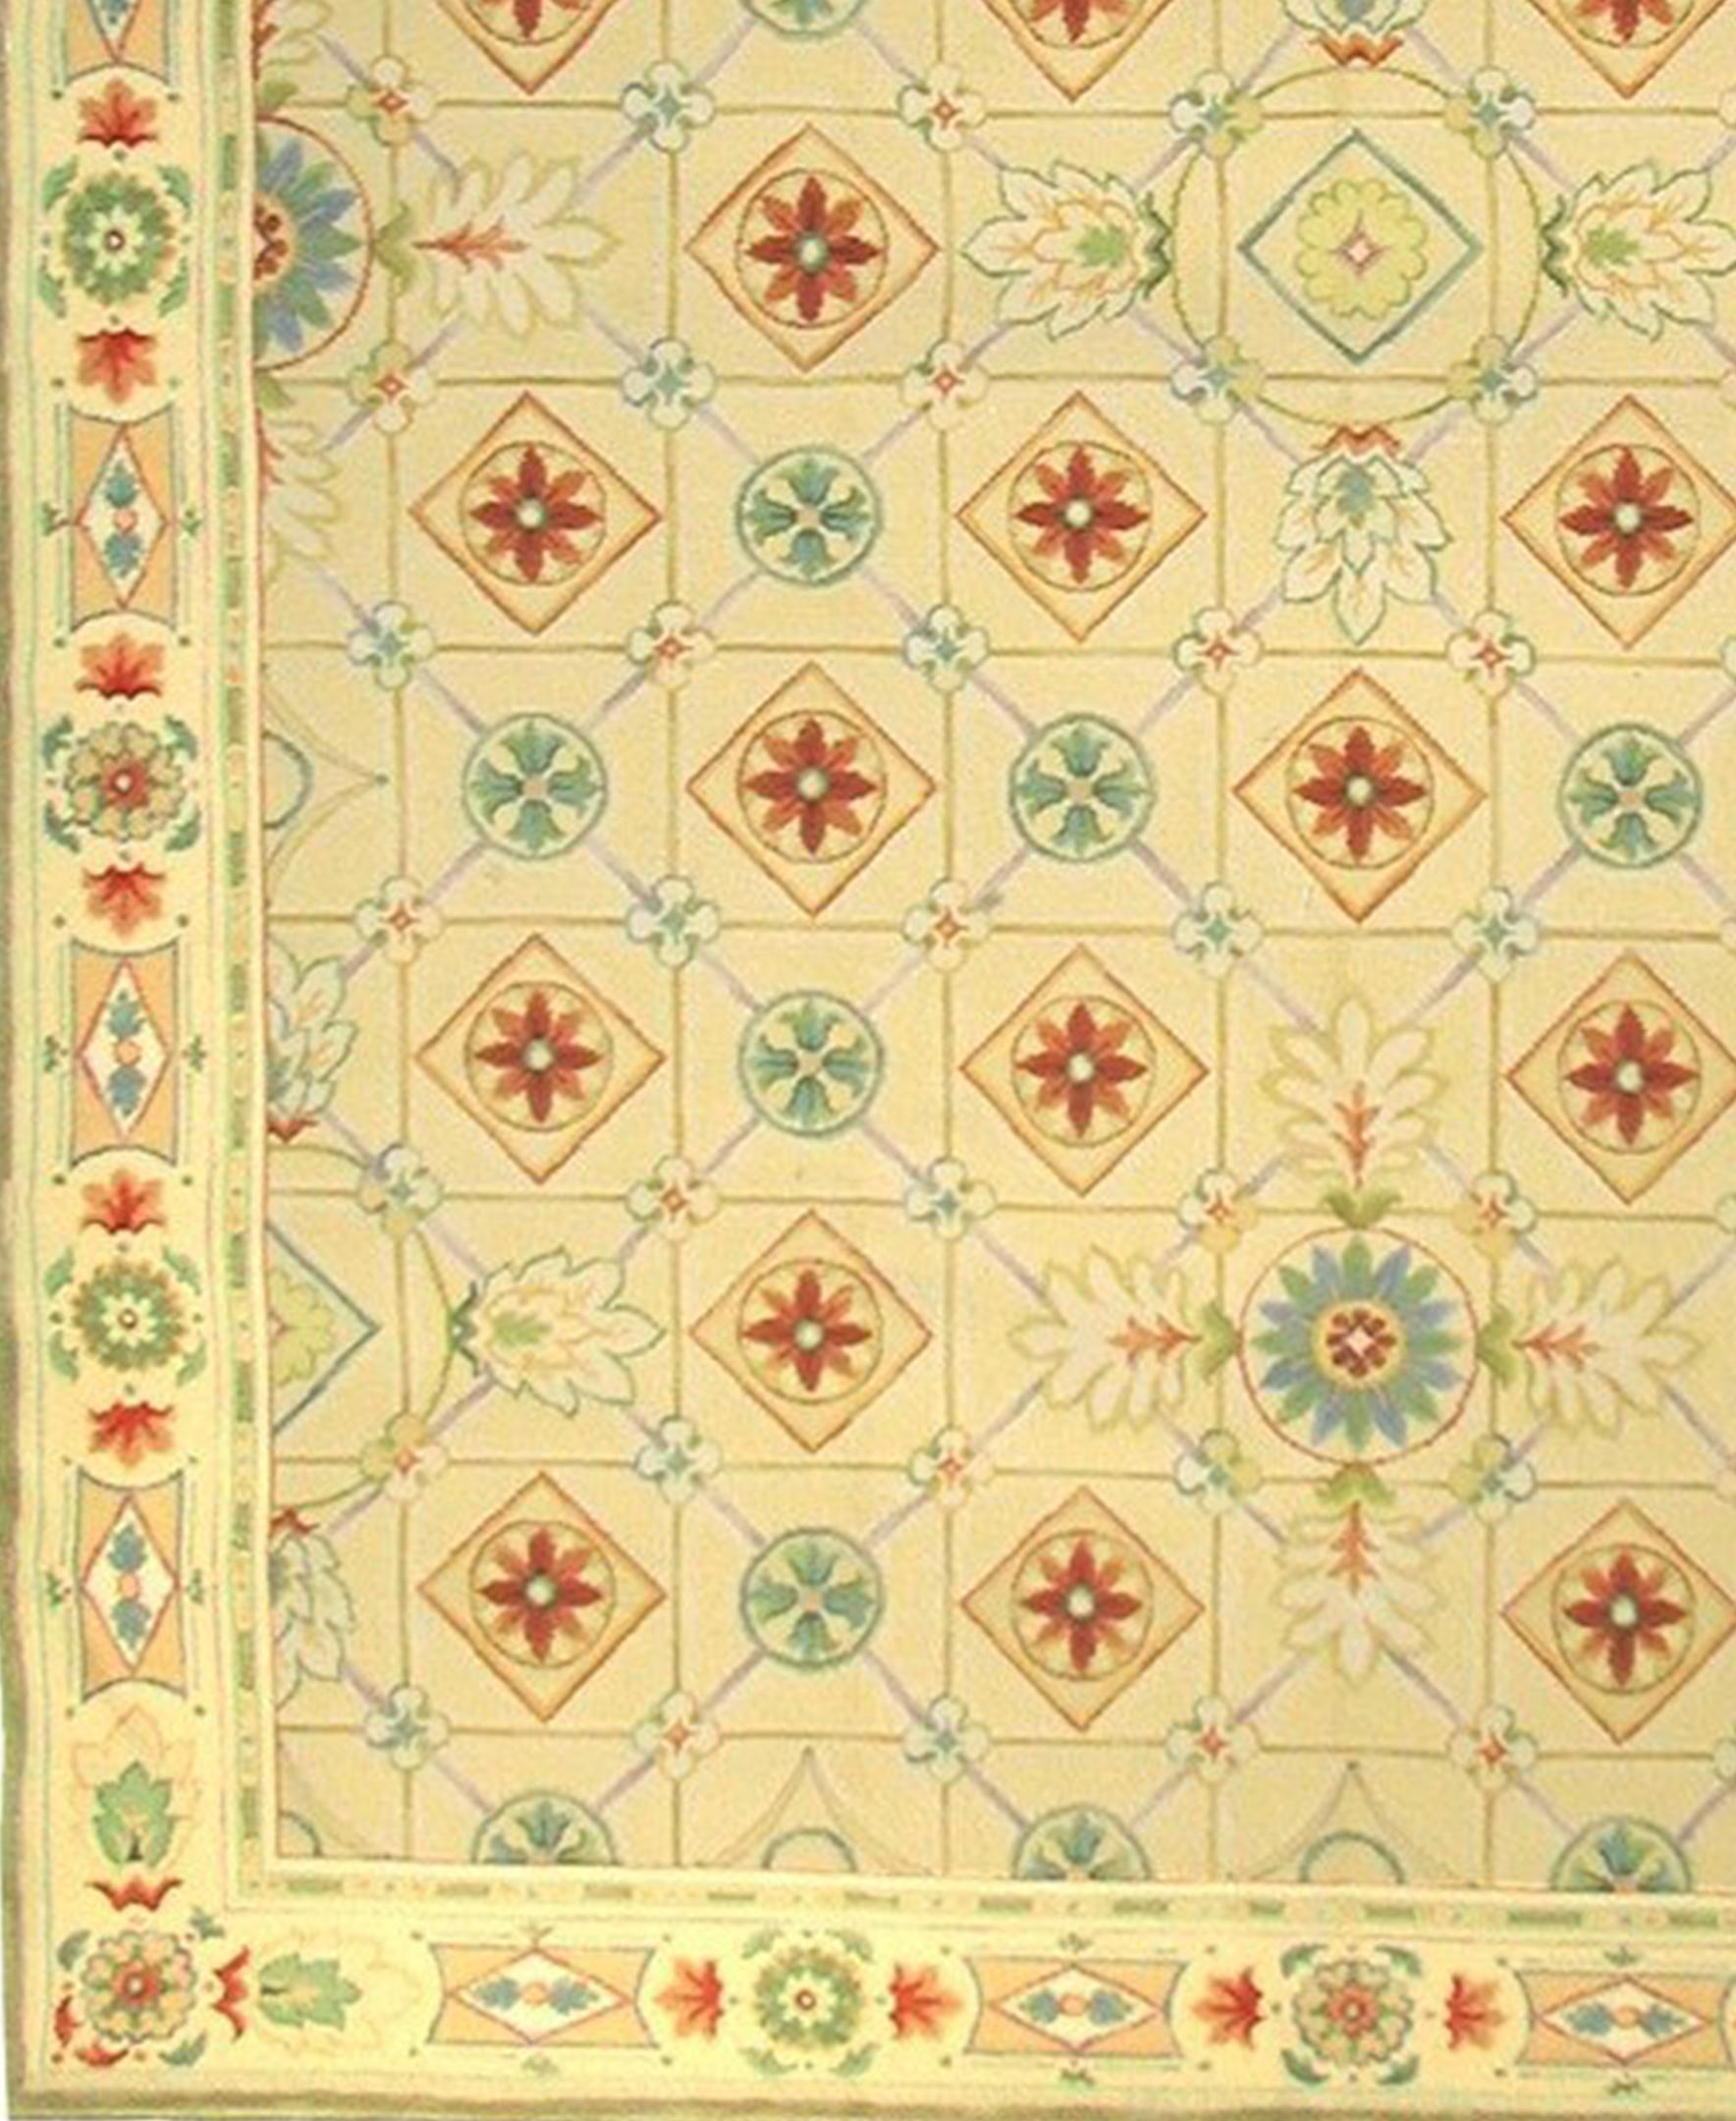 Gelb, rot, orange, türkis, aqua, grün, lila in einem geometrischen Muster des französischen Empire, das auf einem Originalgemälde von Elizabeth Moisan aus Asmara basiert. Dieser handgefertigte Teppich mit geschnittenem und geschlungenem Flor wurde